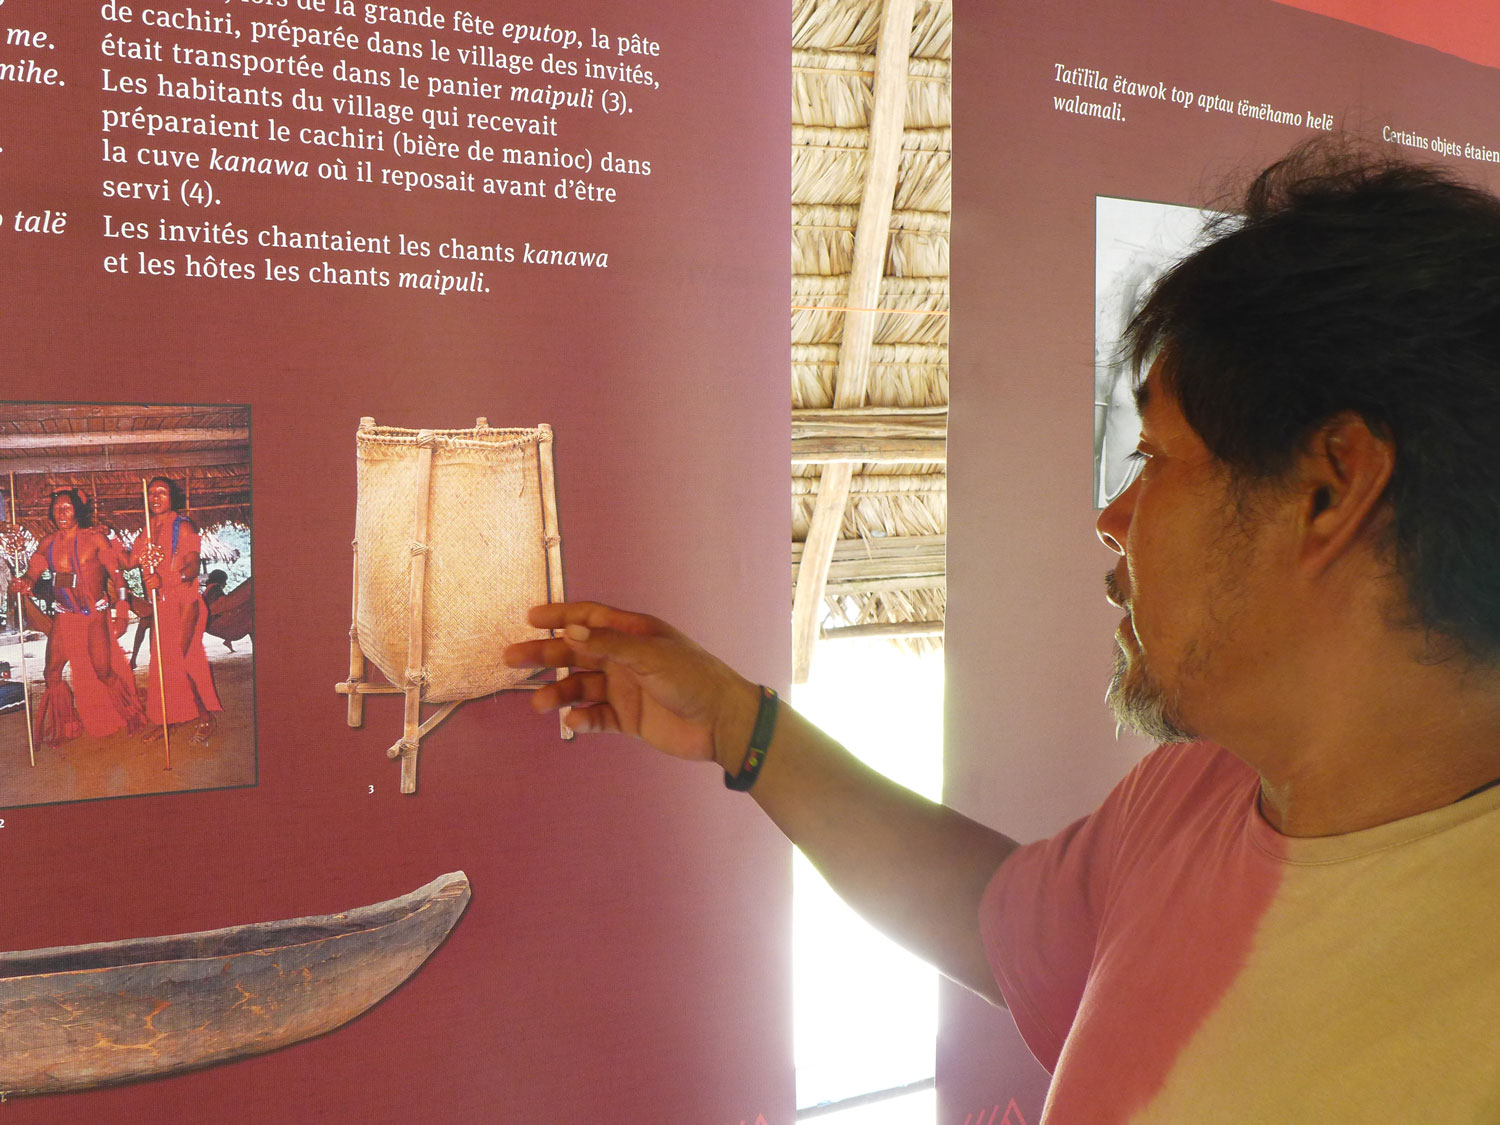 Aluke montre le sac contenant les objets rituels du maraké.